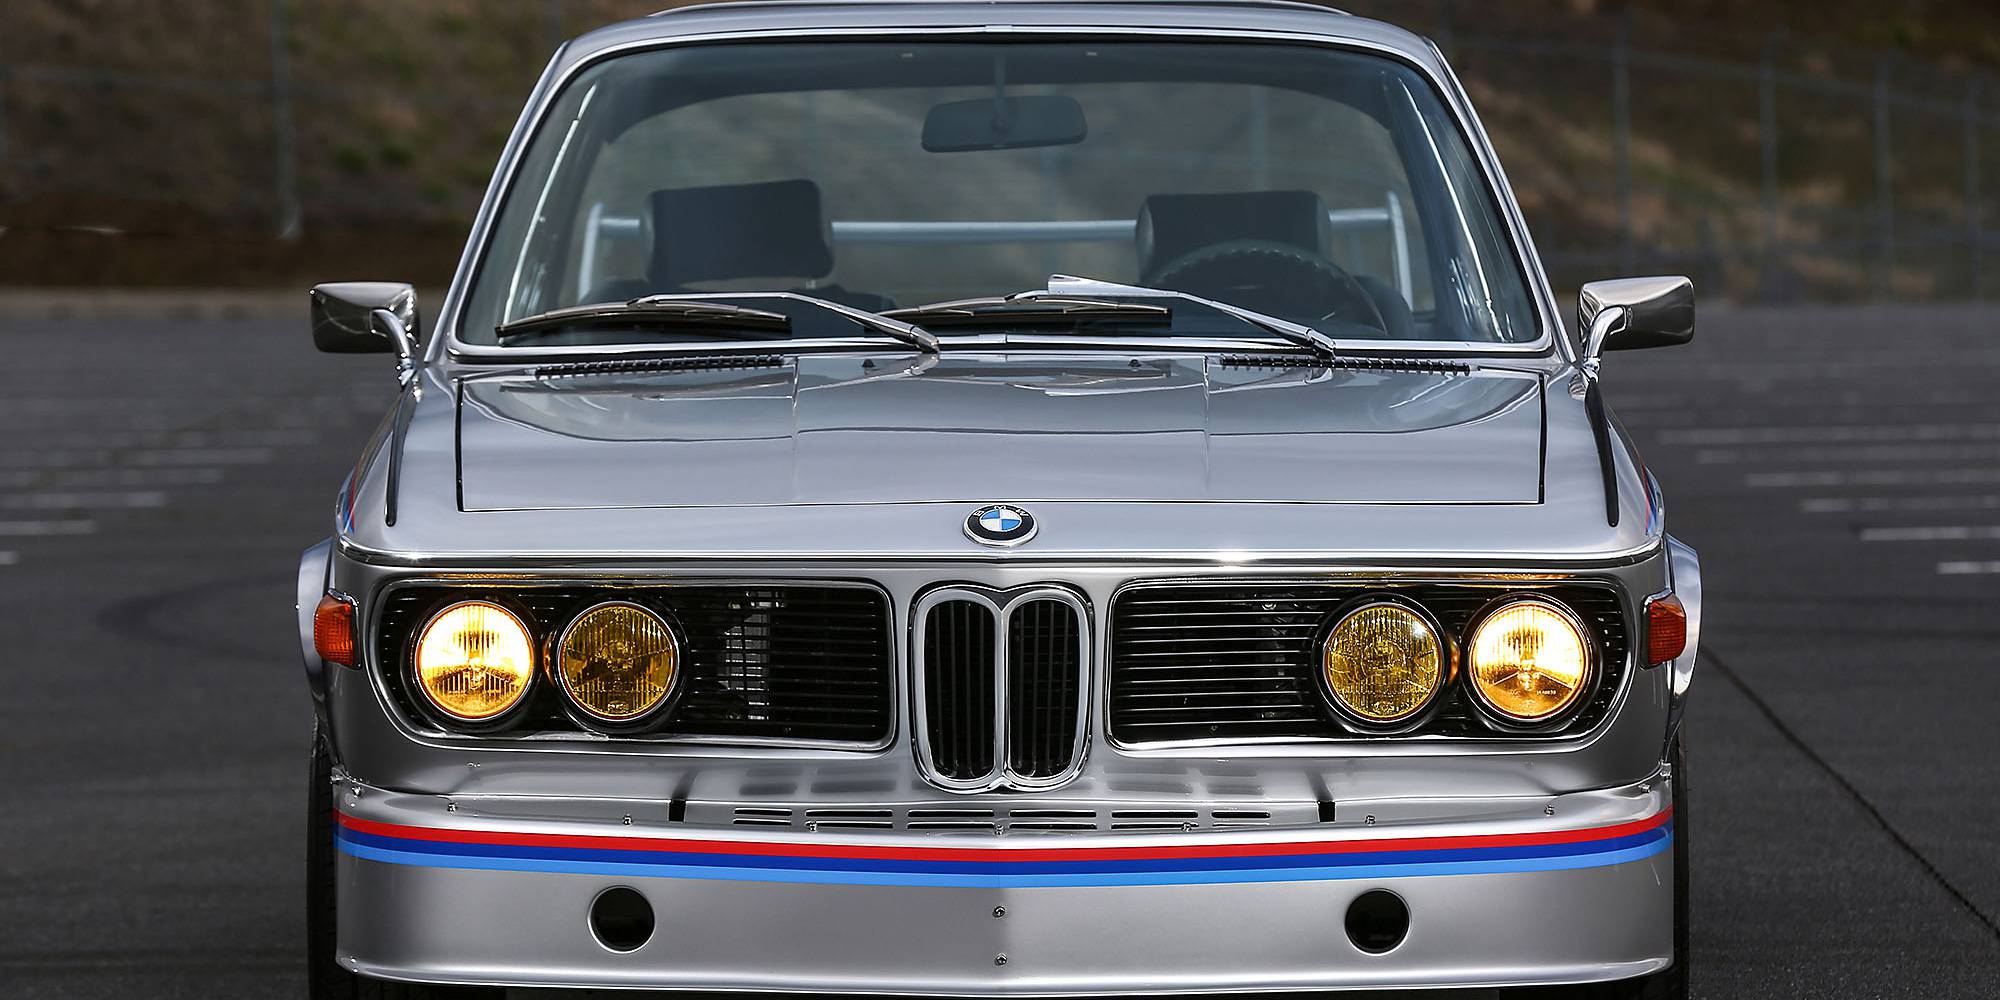 1973年式 BMW 3.0 CSL バットモービル|ビンゴスポーツ/希少車、 絶版車、高級車の販売・買取。